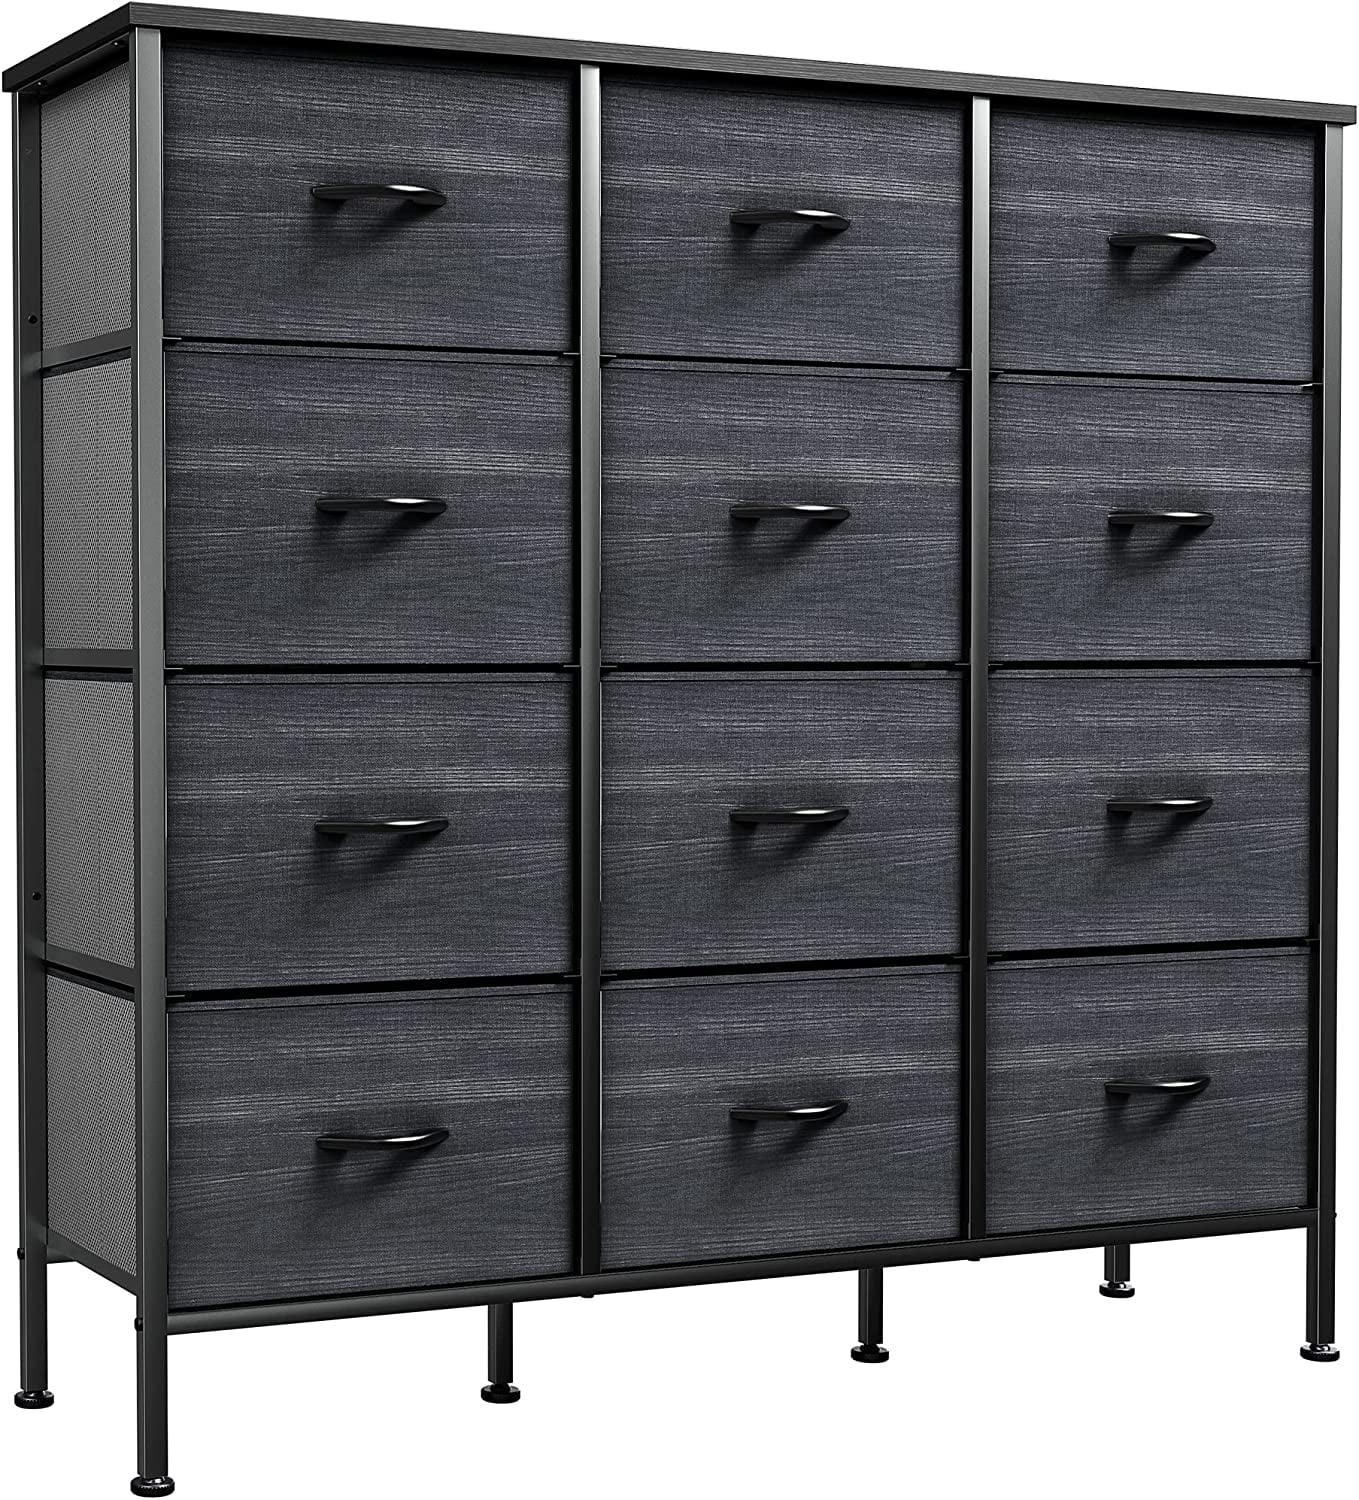 Pirecart 12-drawer Dresser, Fabric Storage Tower W/textured Print